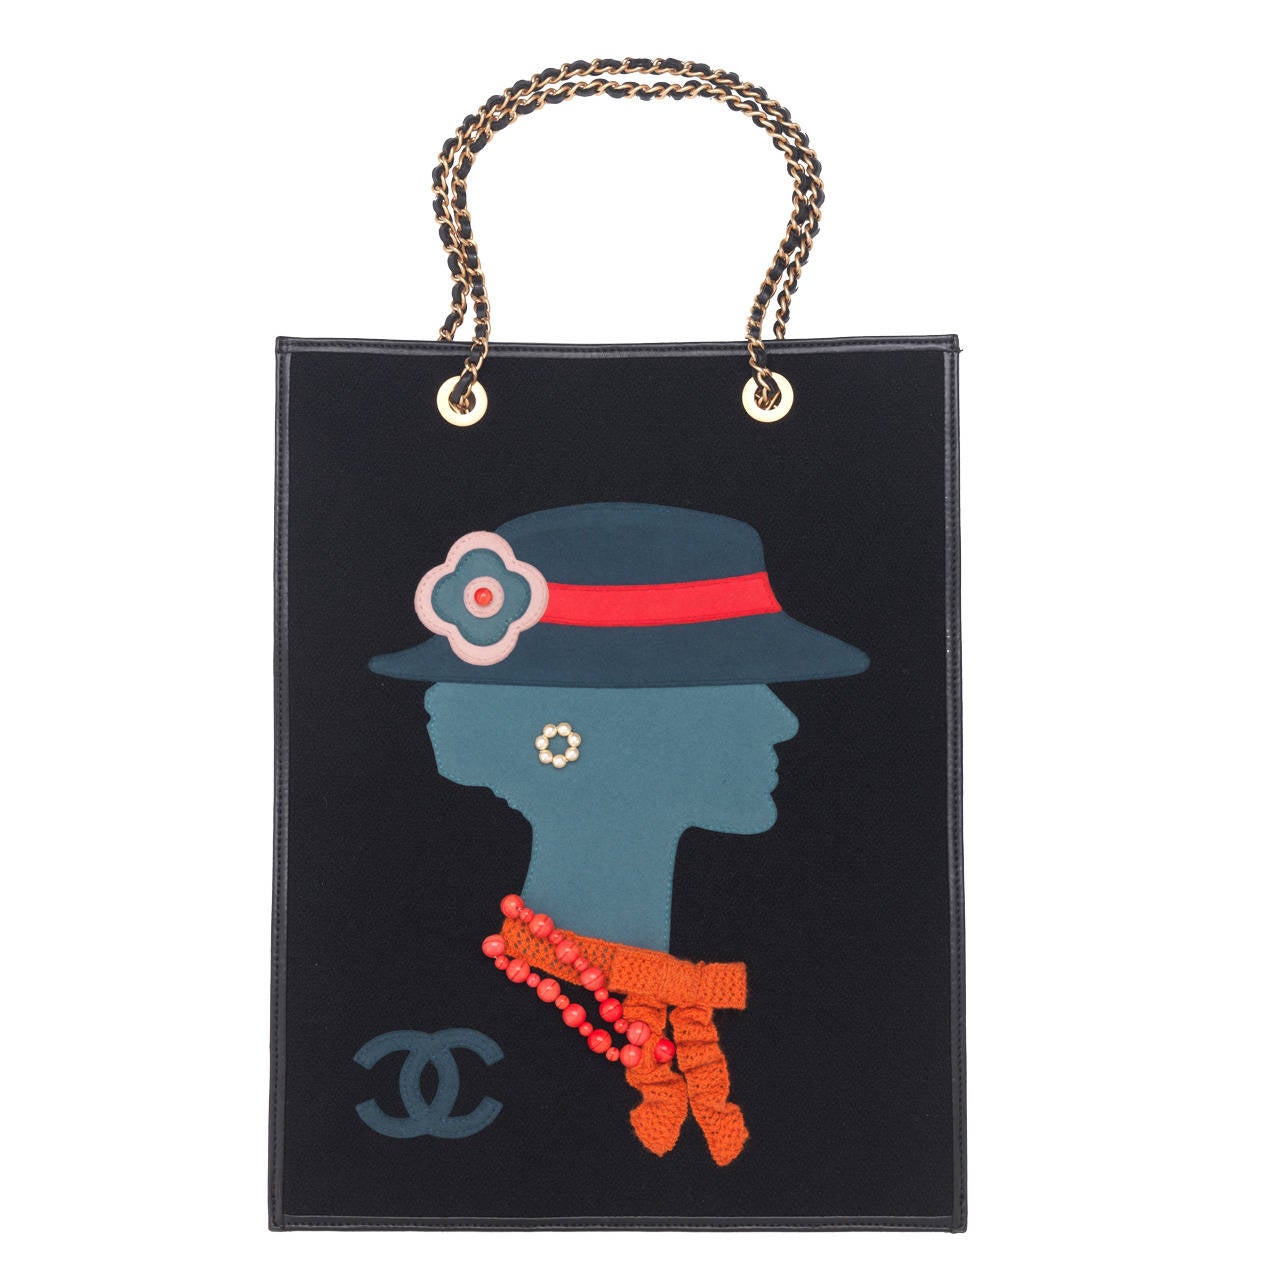 Coco Chanel Vintage Handbags | SEMA Data Co-op